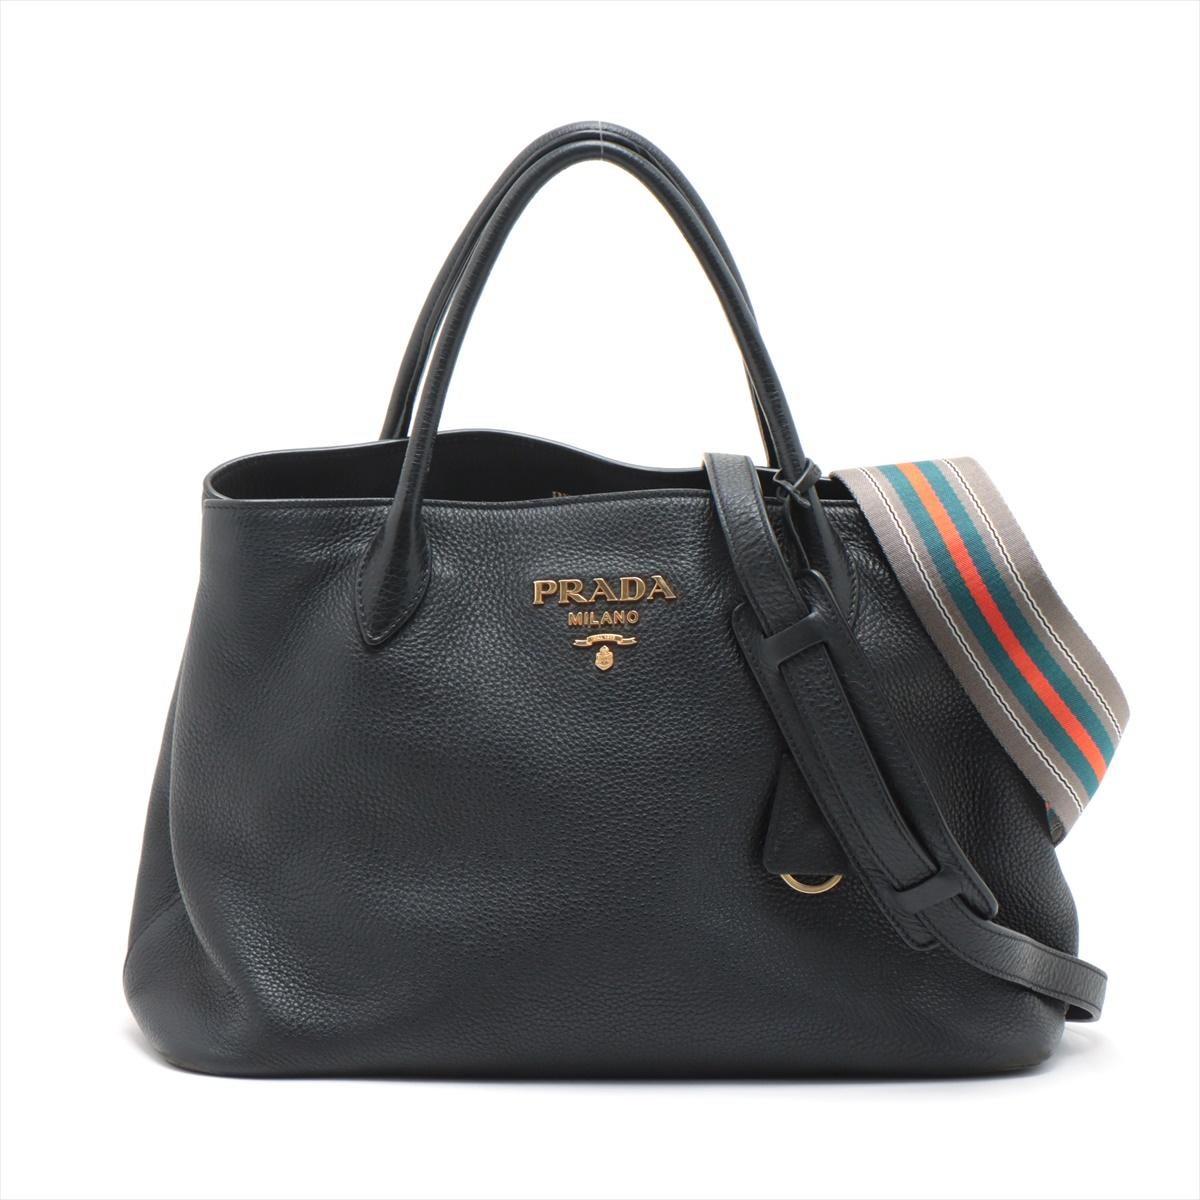 Le sac à main en cuir Vitello Daino en noir offre à la fois sophistication et polyvalence. Fabriqué en cuir Vitello Daino, connu pour sa texture cailloutée, ce sac est d'une élégance intemporelle dans un noir classique. La conception à double sens